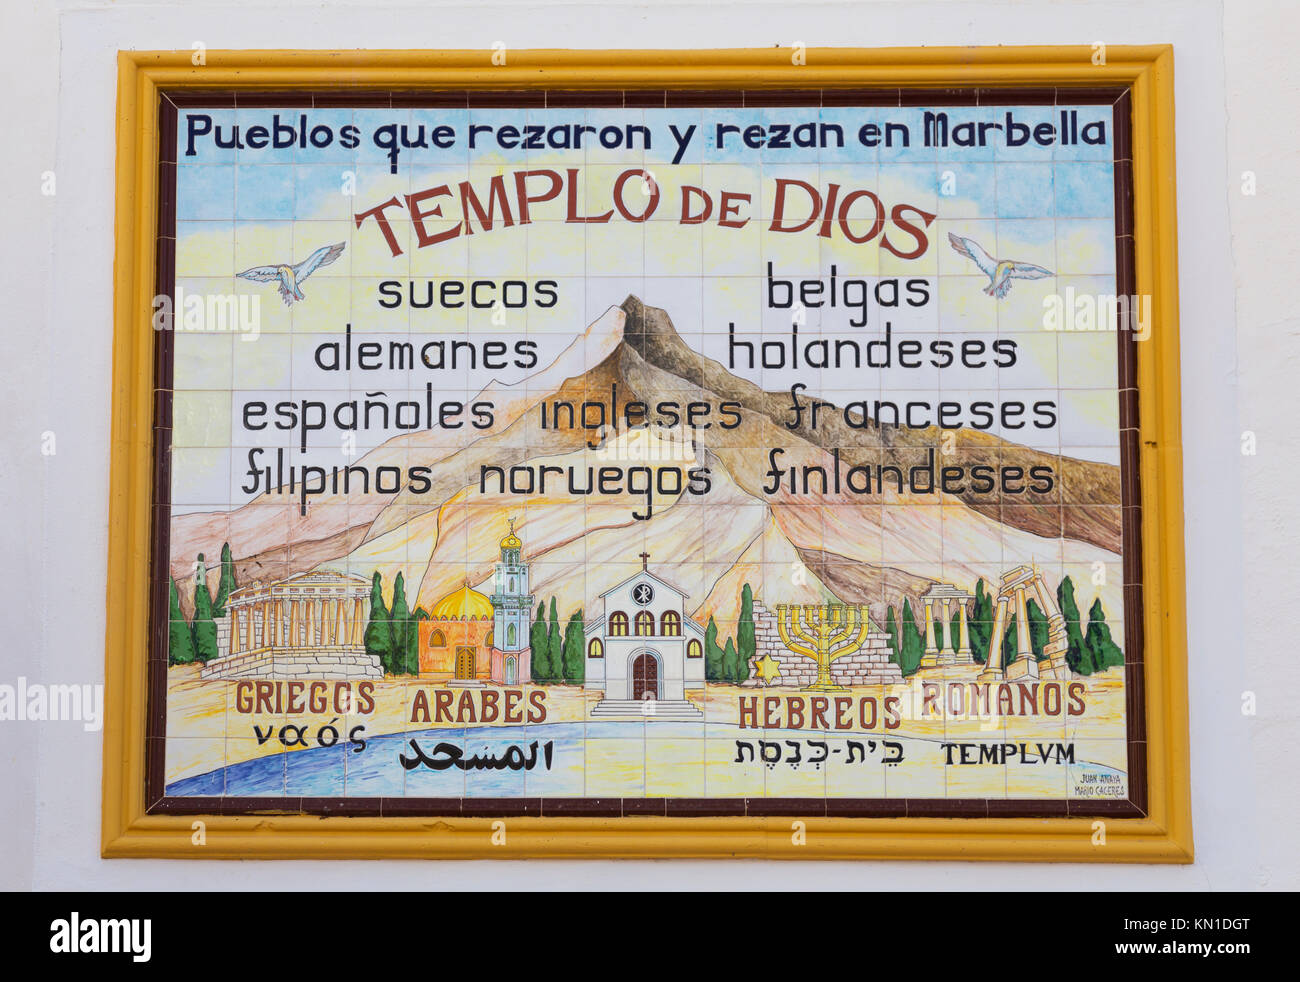 Tiled Templo de Dios wall mosaic in Plaza de la iglesia on the wall of Iglesia de Nuestra Señora de la Encarnación, Marbella, Spain Stock Photo